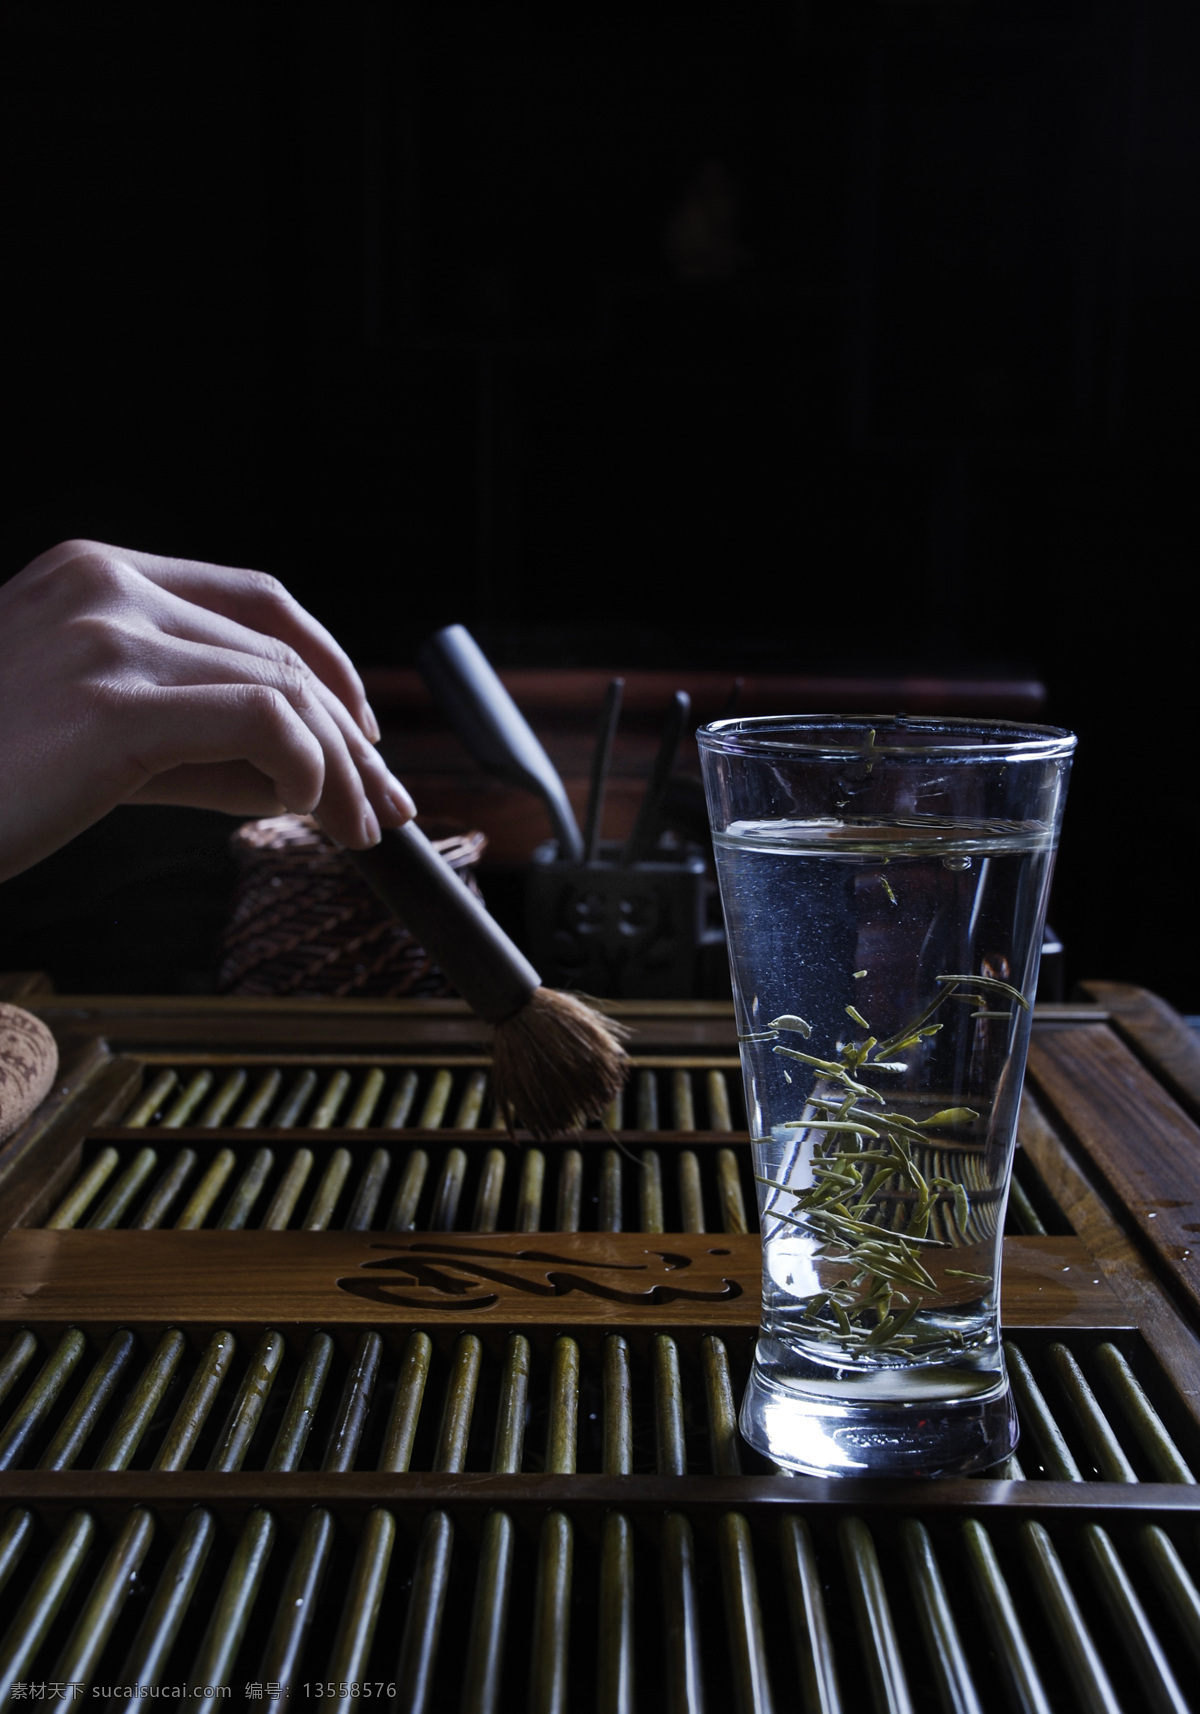 茶艺 茶 茶具 刷子 玻璃杯 茶叶 绿茶 茶道 手 茶水 传统文化 文化艺术